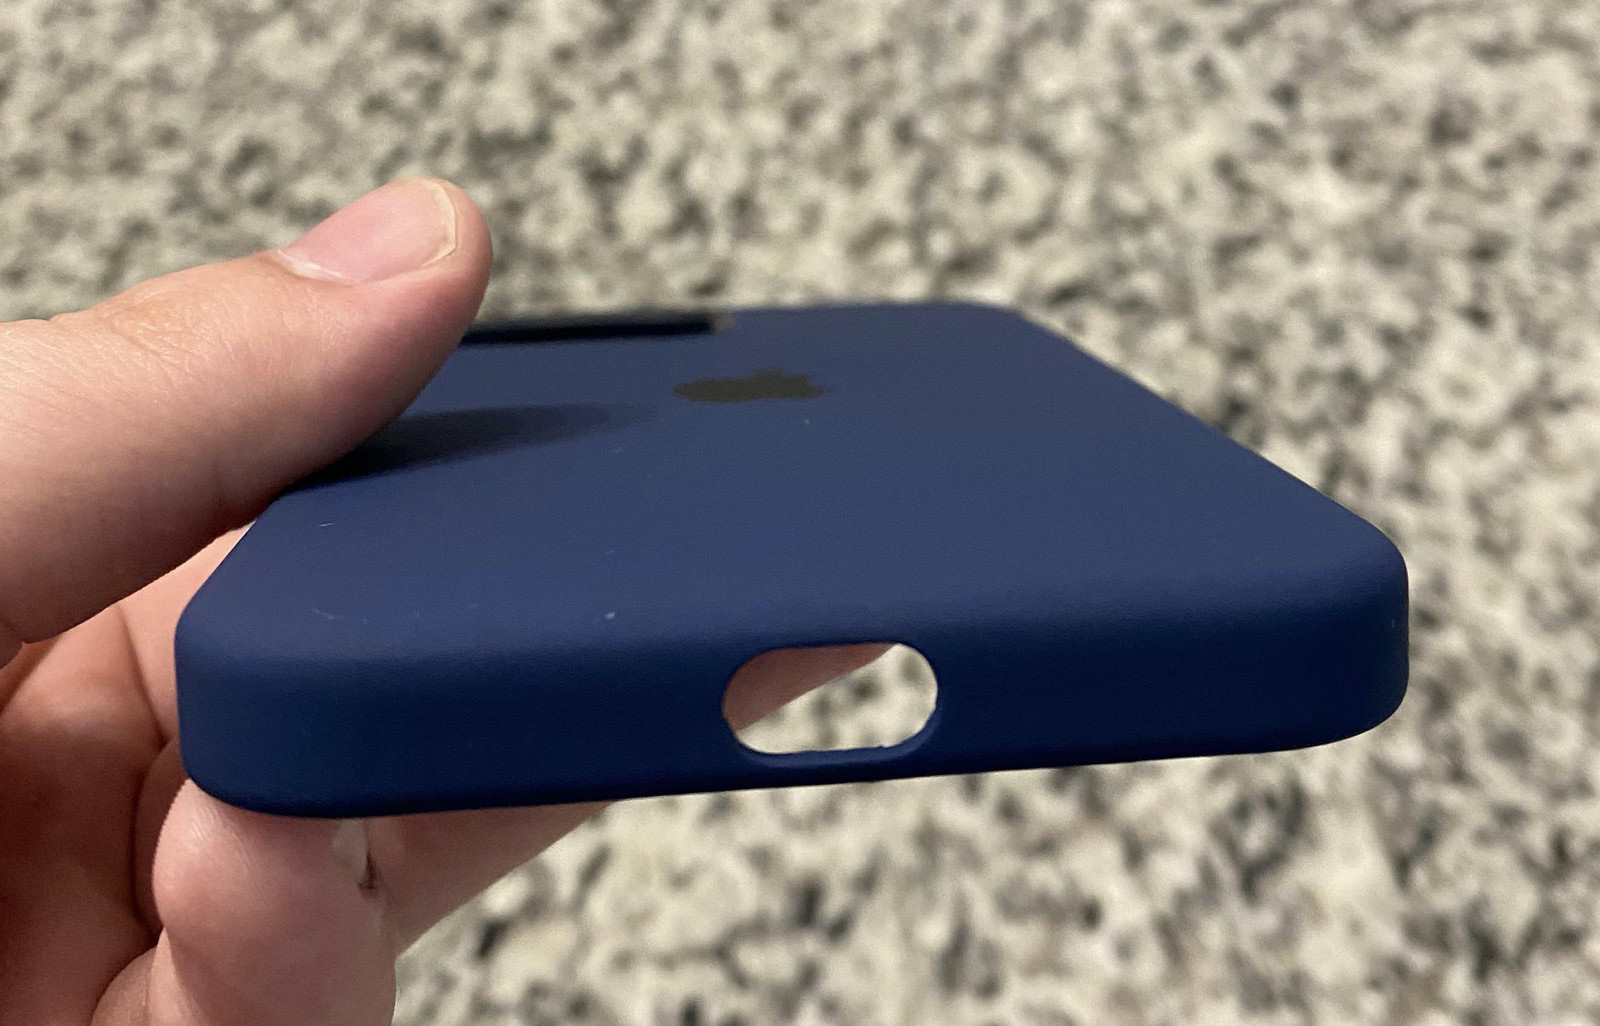 Ốp lưng iPhone 12 giá 49 USD của Apple mắc lỗi thiết kế ngớ ngẩn - Ảnh 1.